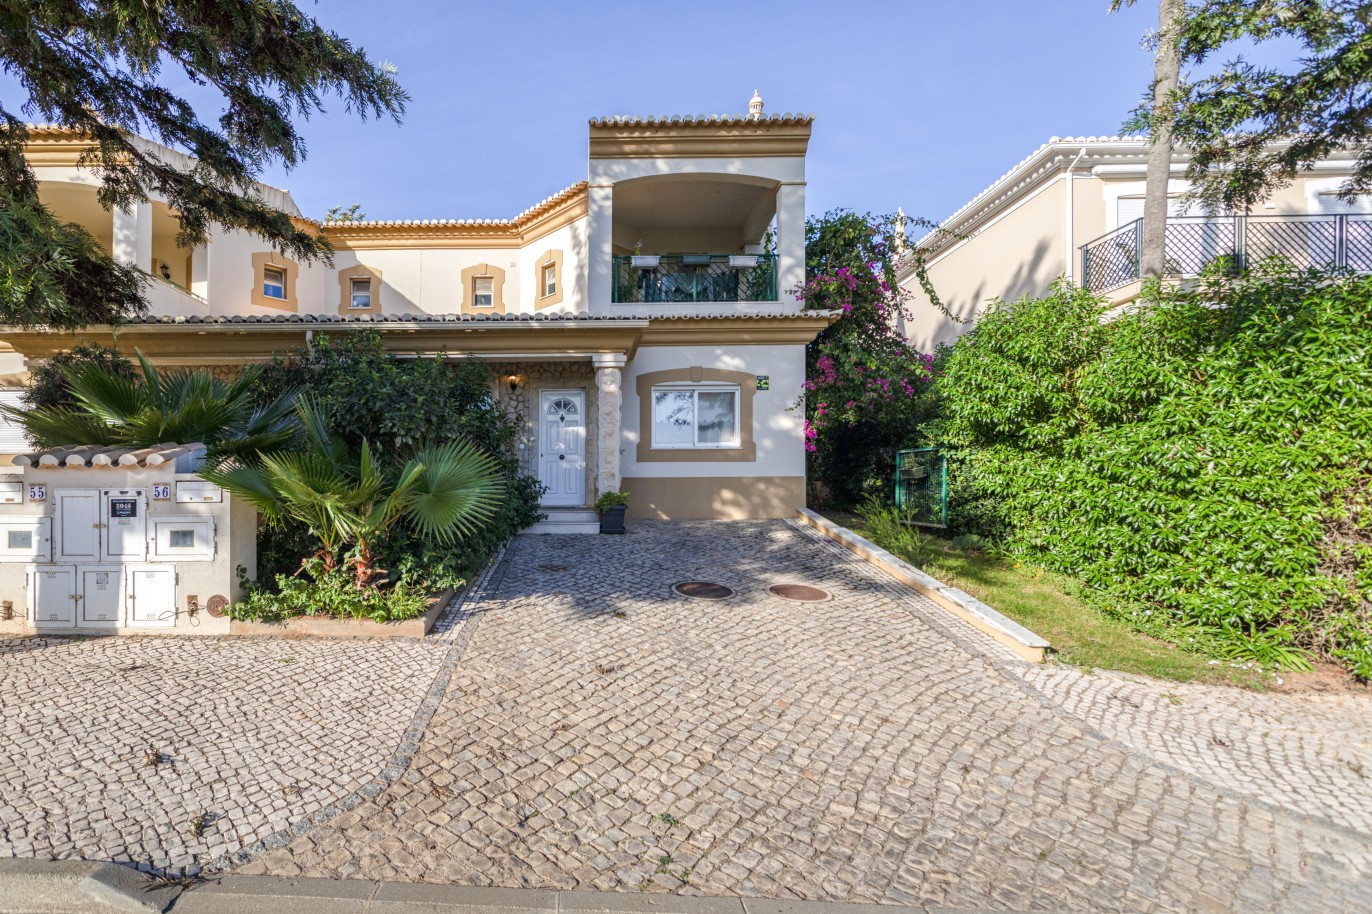 Moradia V3, em condomínio privado, para venda em Lagos, Algarve_246290